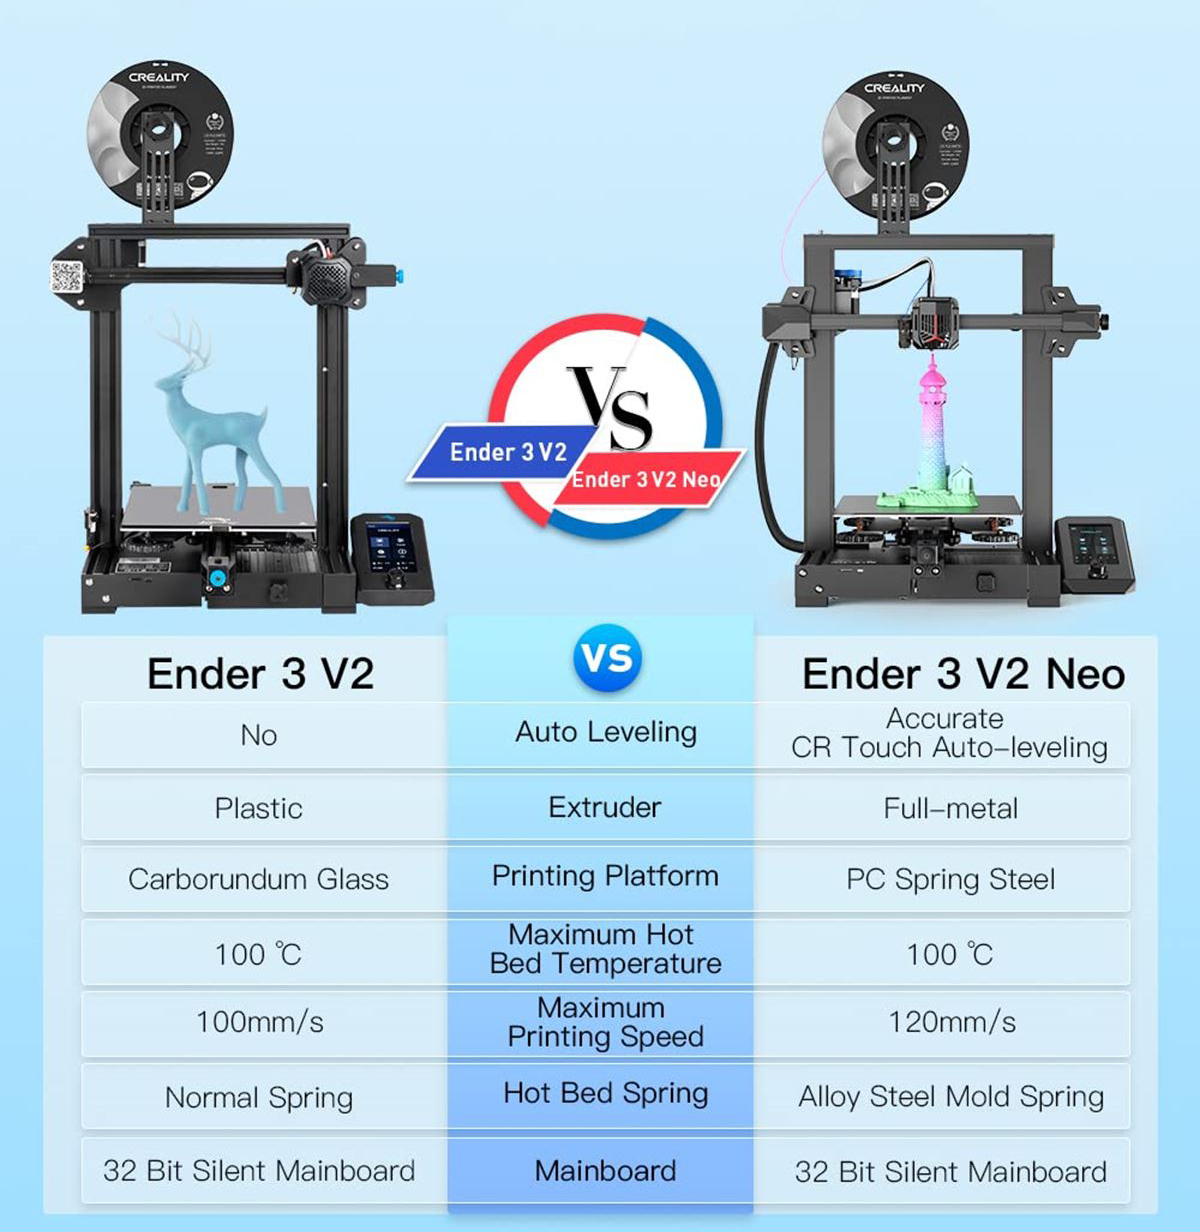 Ender-3 V2 vs Ender-3 Neo vs Ender-3 V2 Neo: A Detailed Comparison